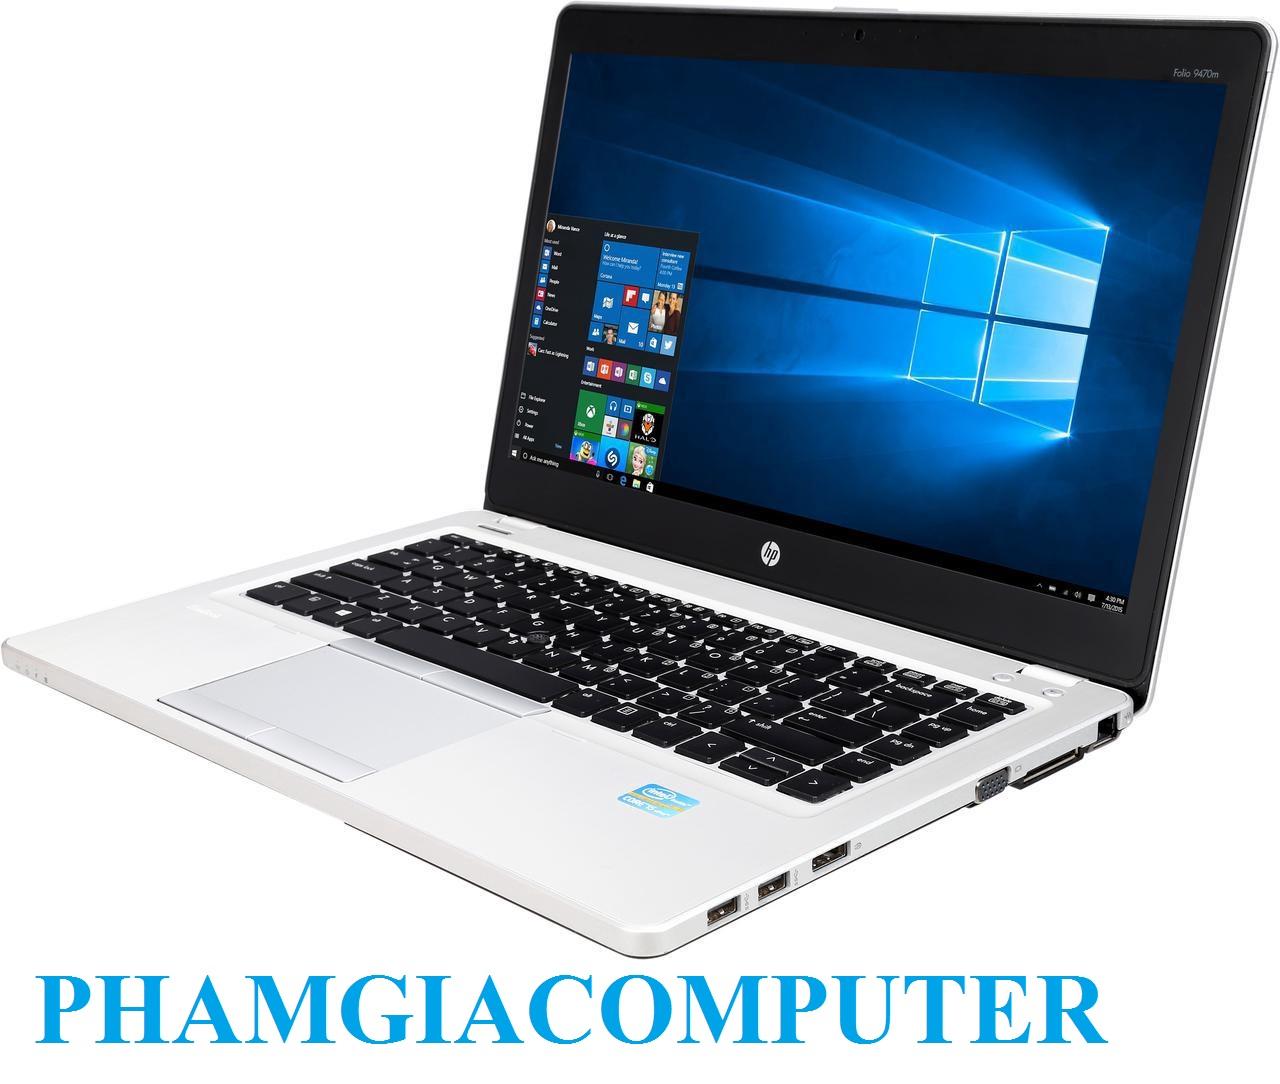 LAPTOP HP FOLIO 9470M Core i7 3667u Ram3 4G SSD 128G 14in Ultrabook siêu mỏng nhẹ 1.6Kg-Hàng nhập khẩu-Tặng Balo,...